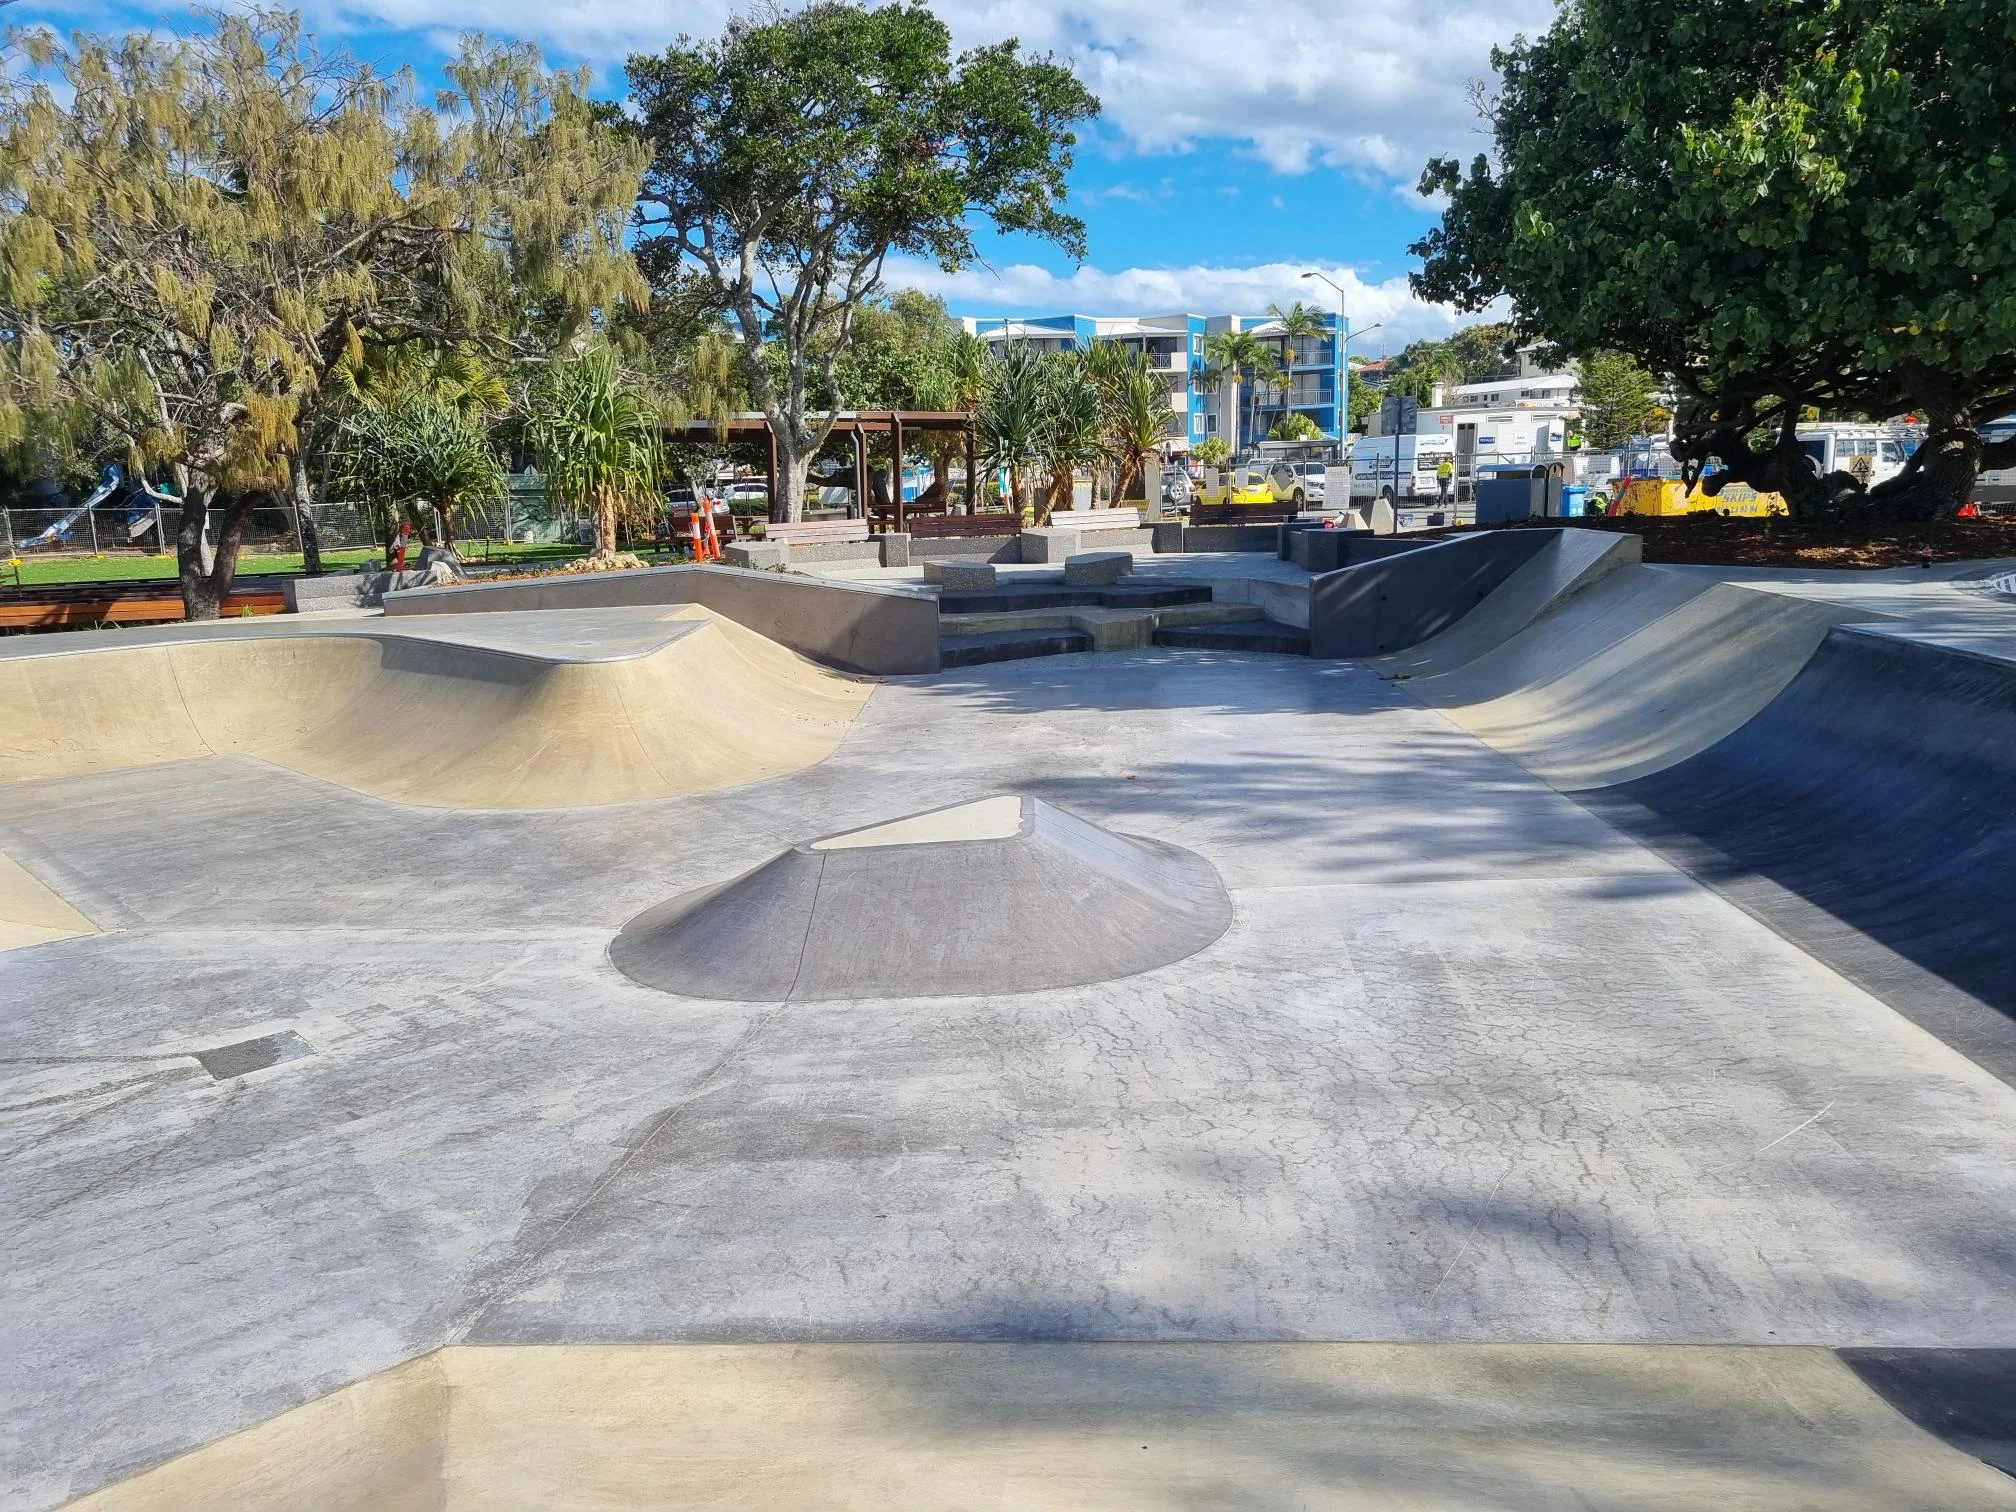 Dicky Beach Skate Park